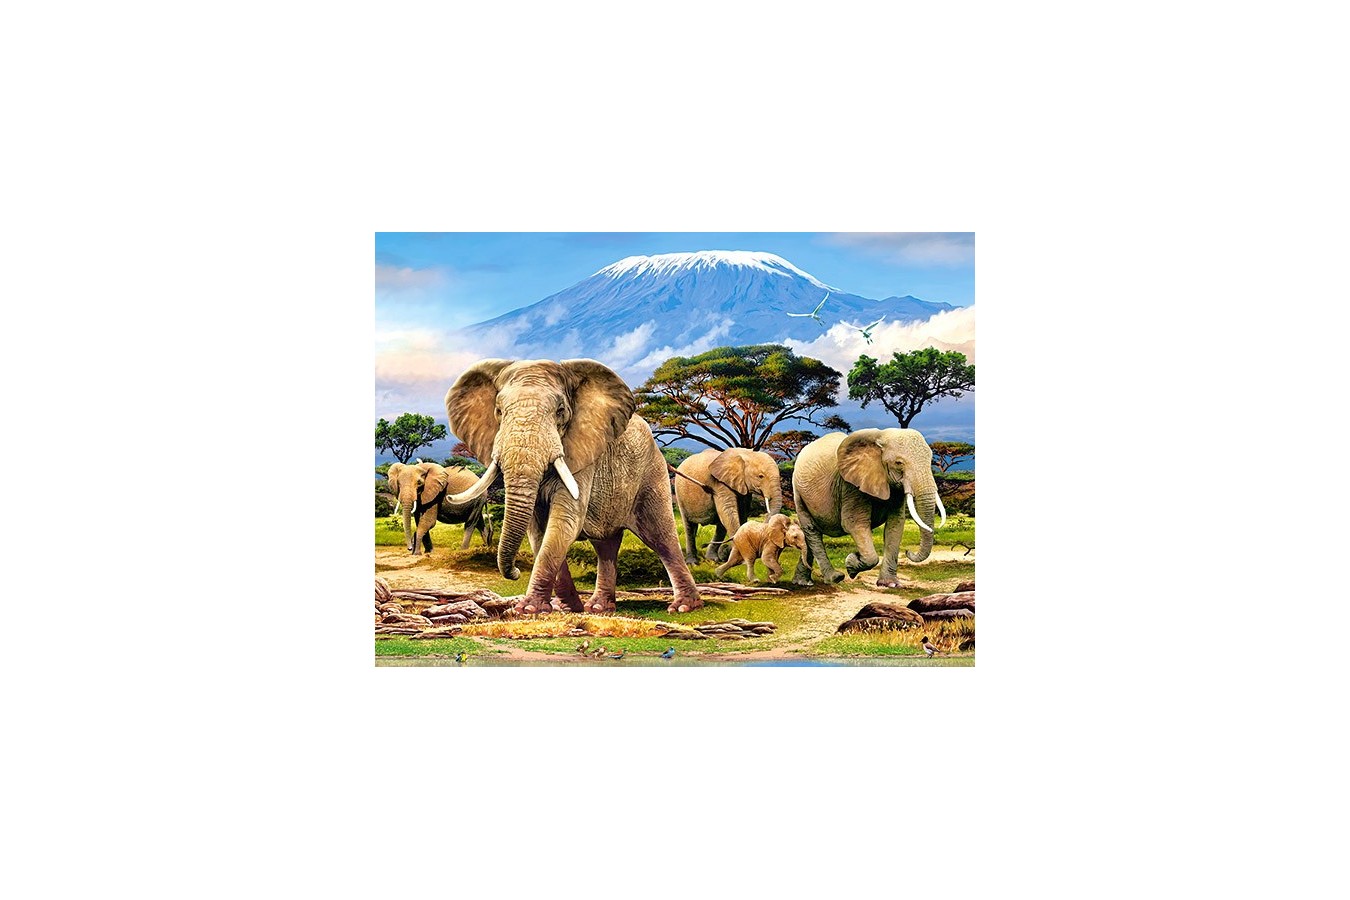 Puzzle Castorland - Kilimanjaro Morning, 300 Piese